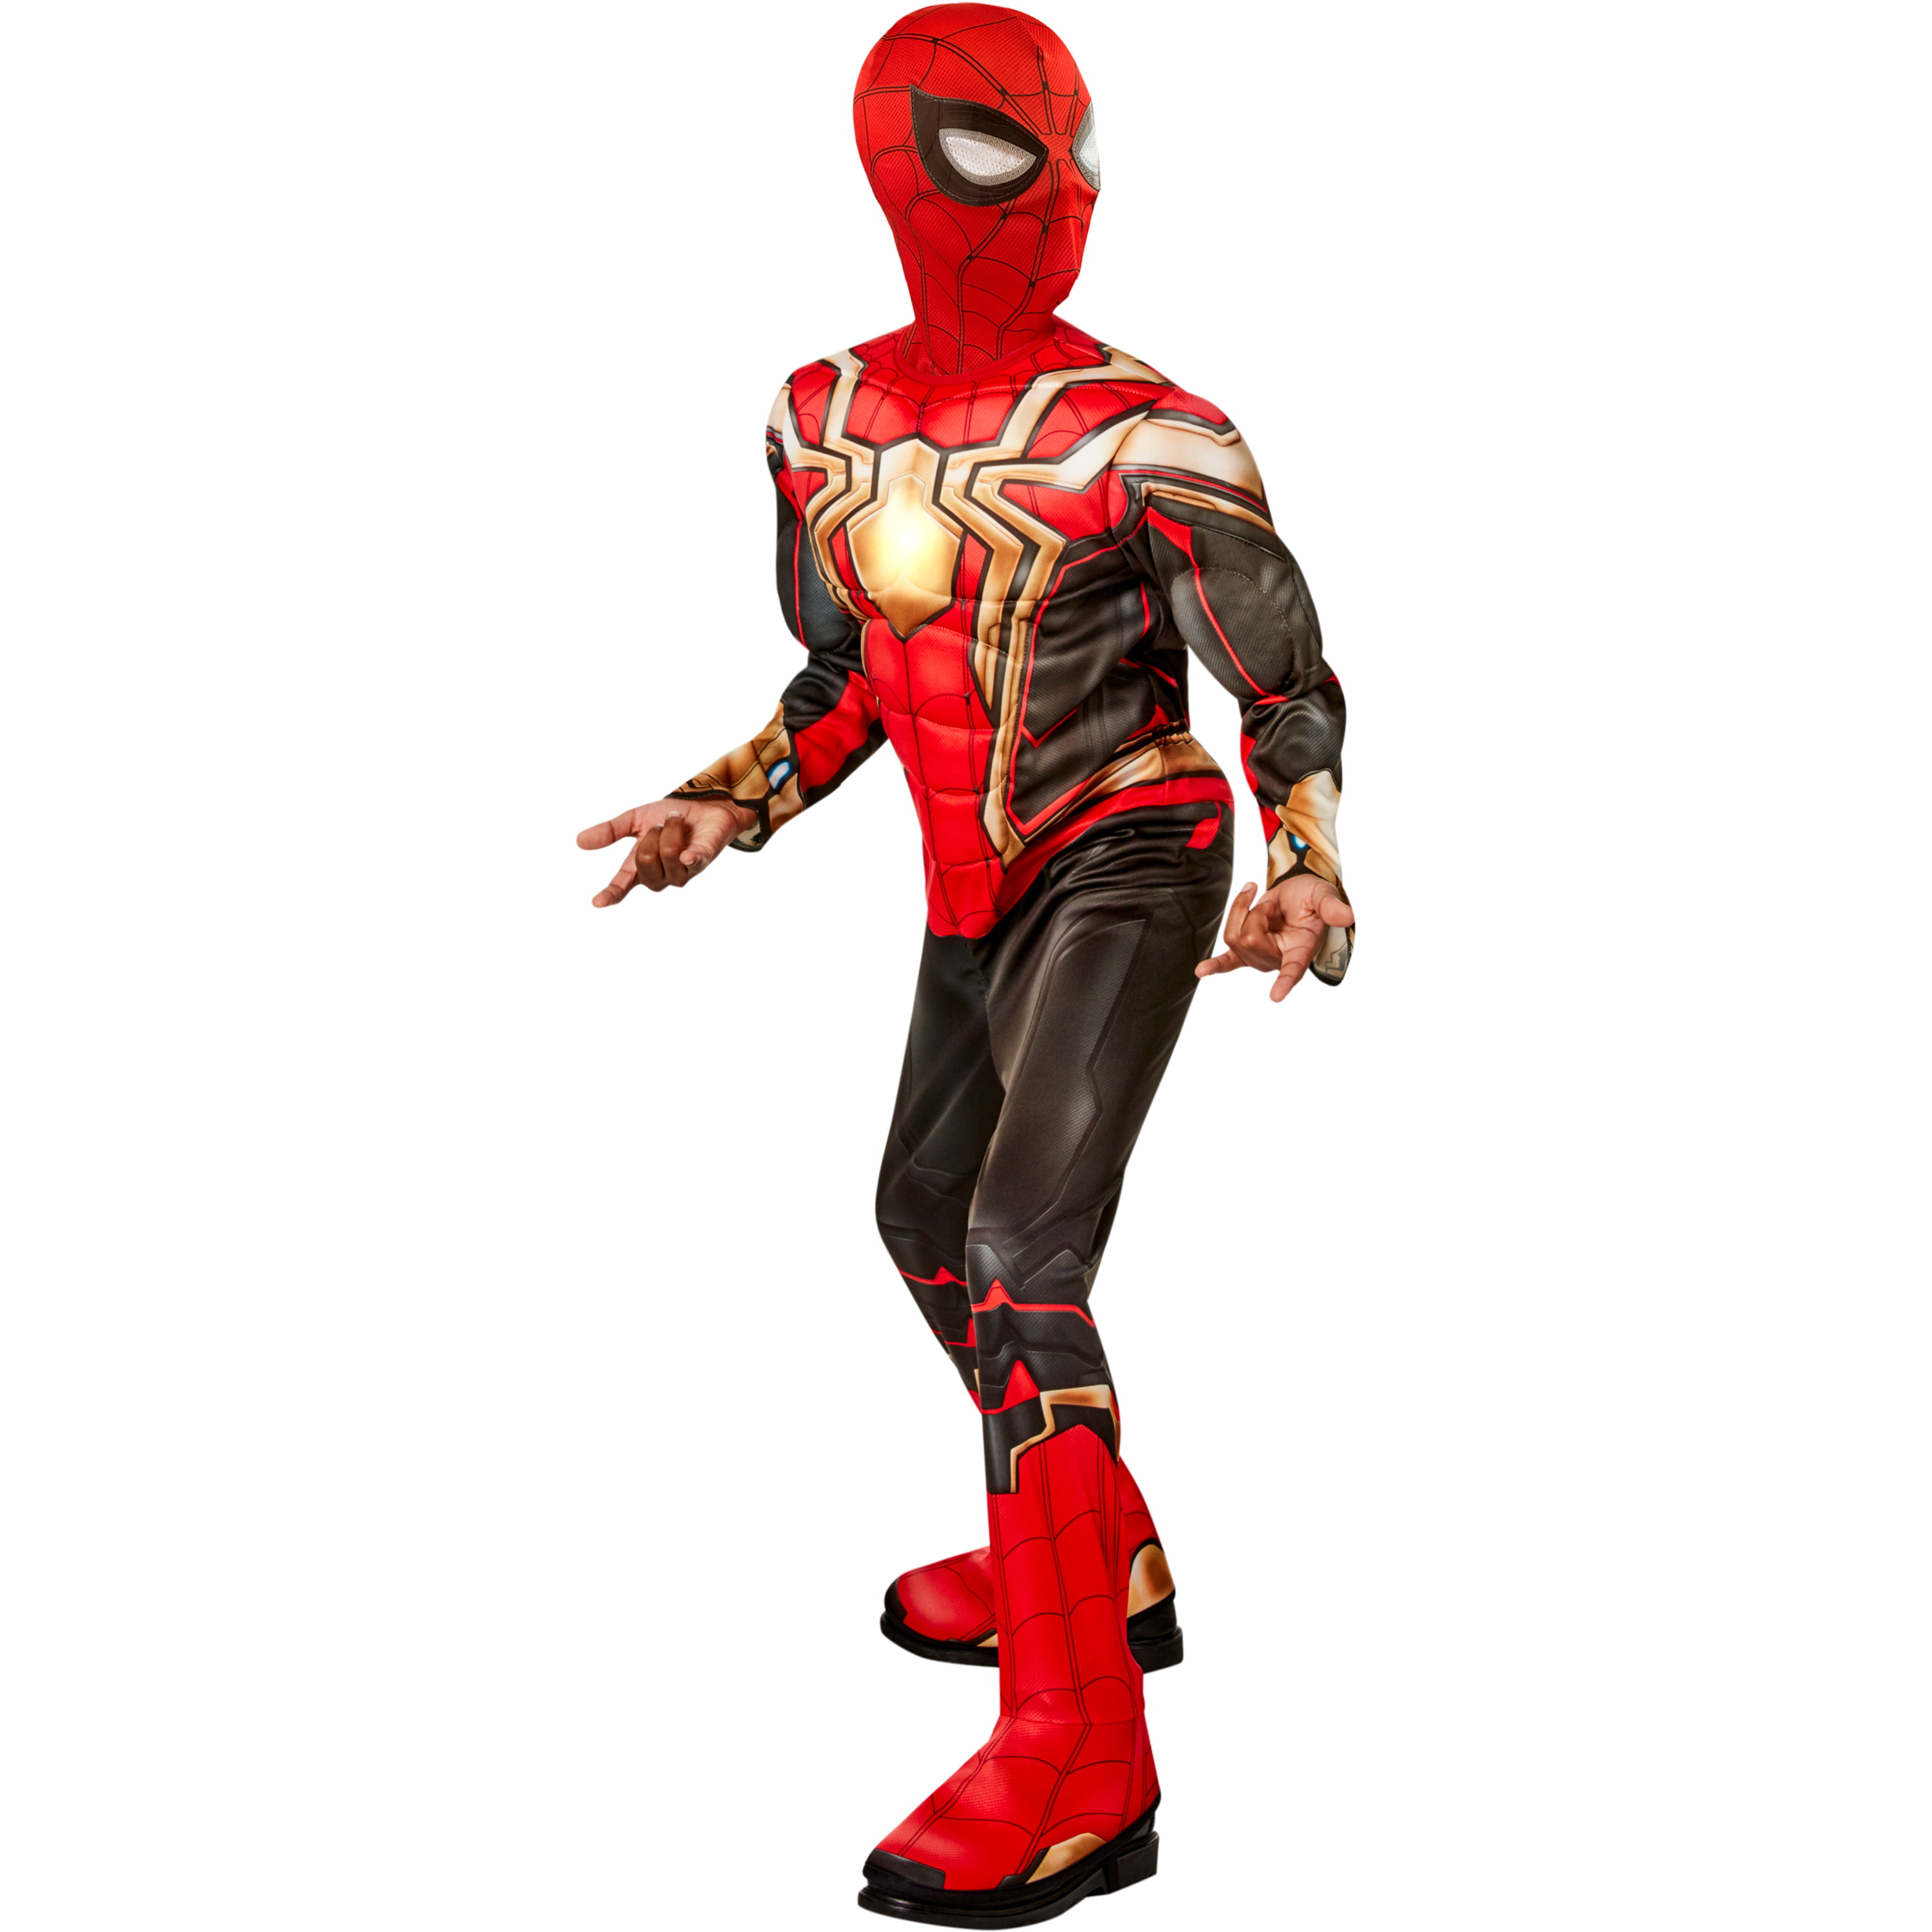 Costume Iron Spider réaliste No Way Home enfant - Spider Shop